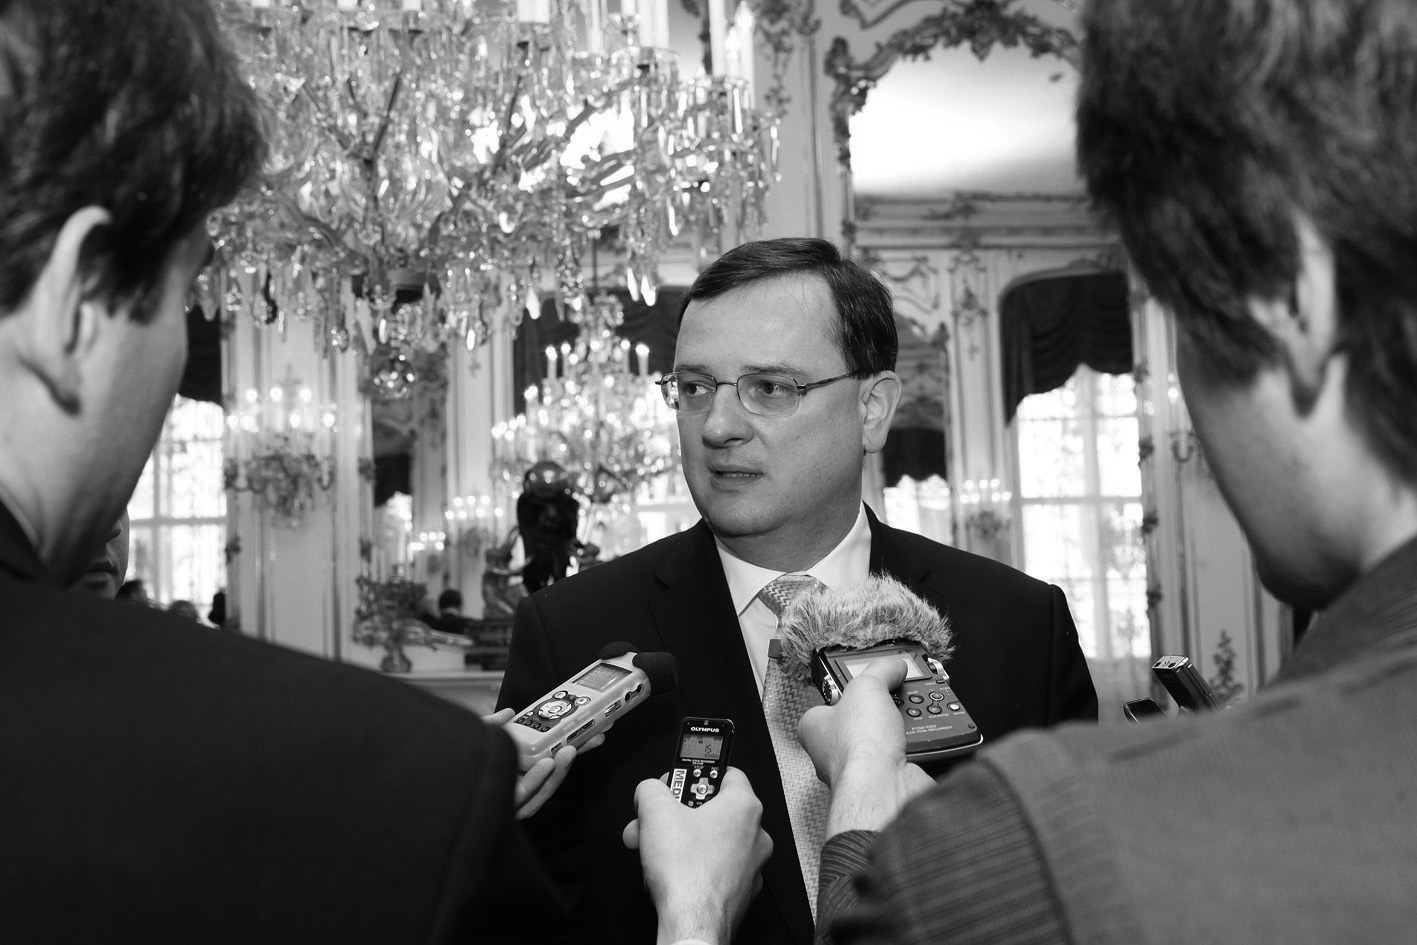 Tisk 4 OBRÁZEK 4.1 Premiér Petr Nečas v rozhovoru s novináři při návštěvě Rakouska.